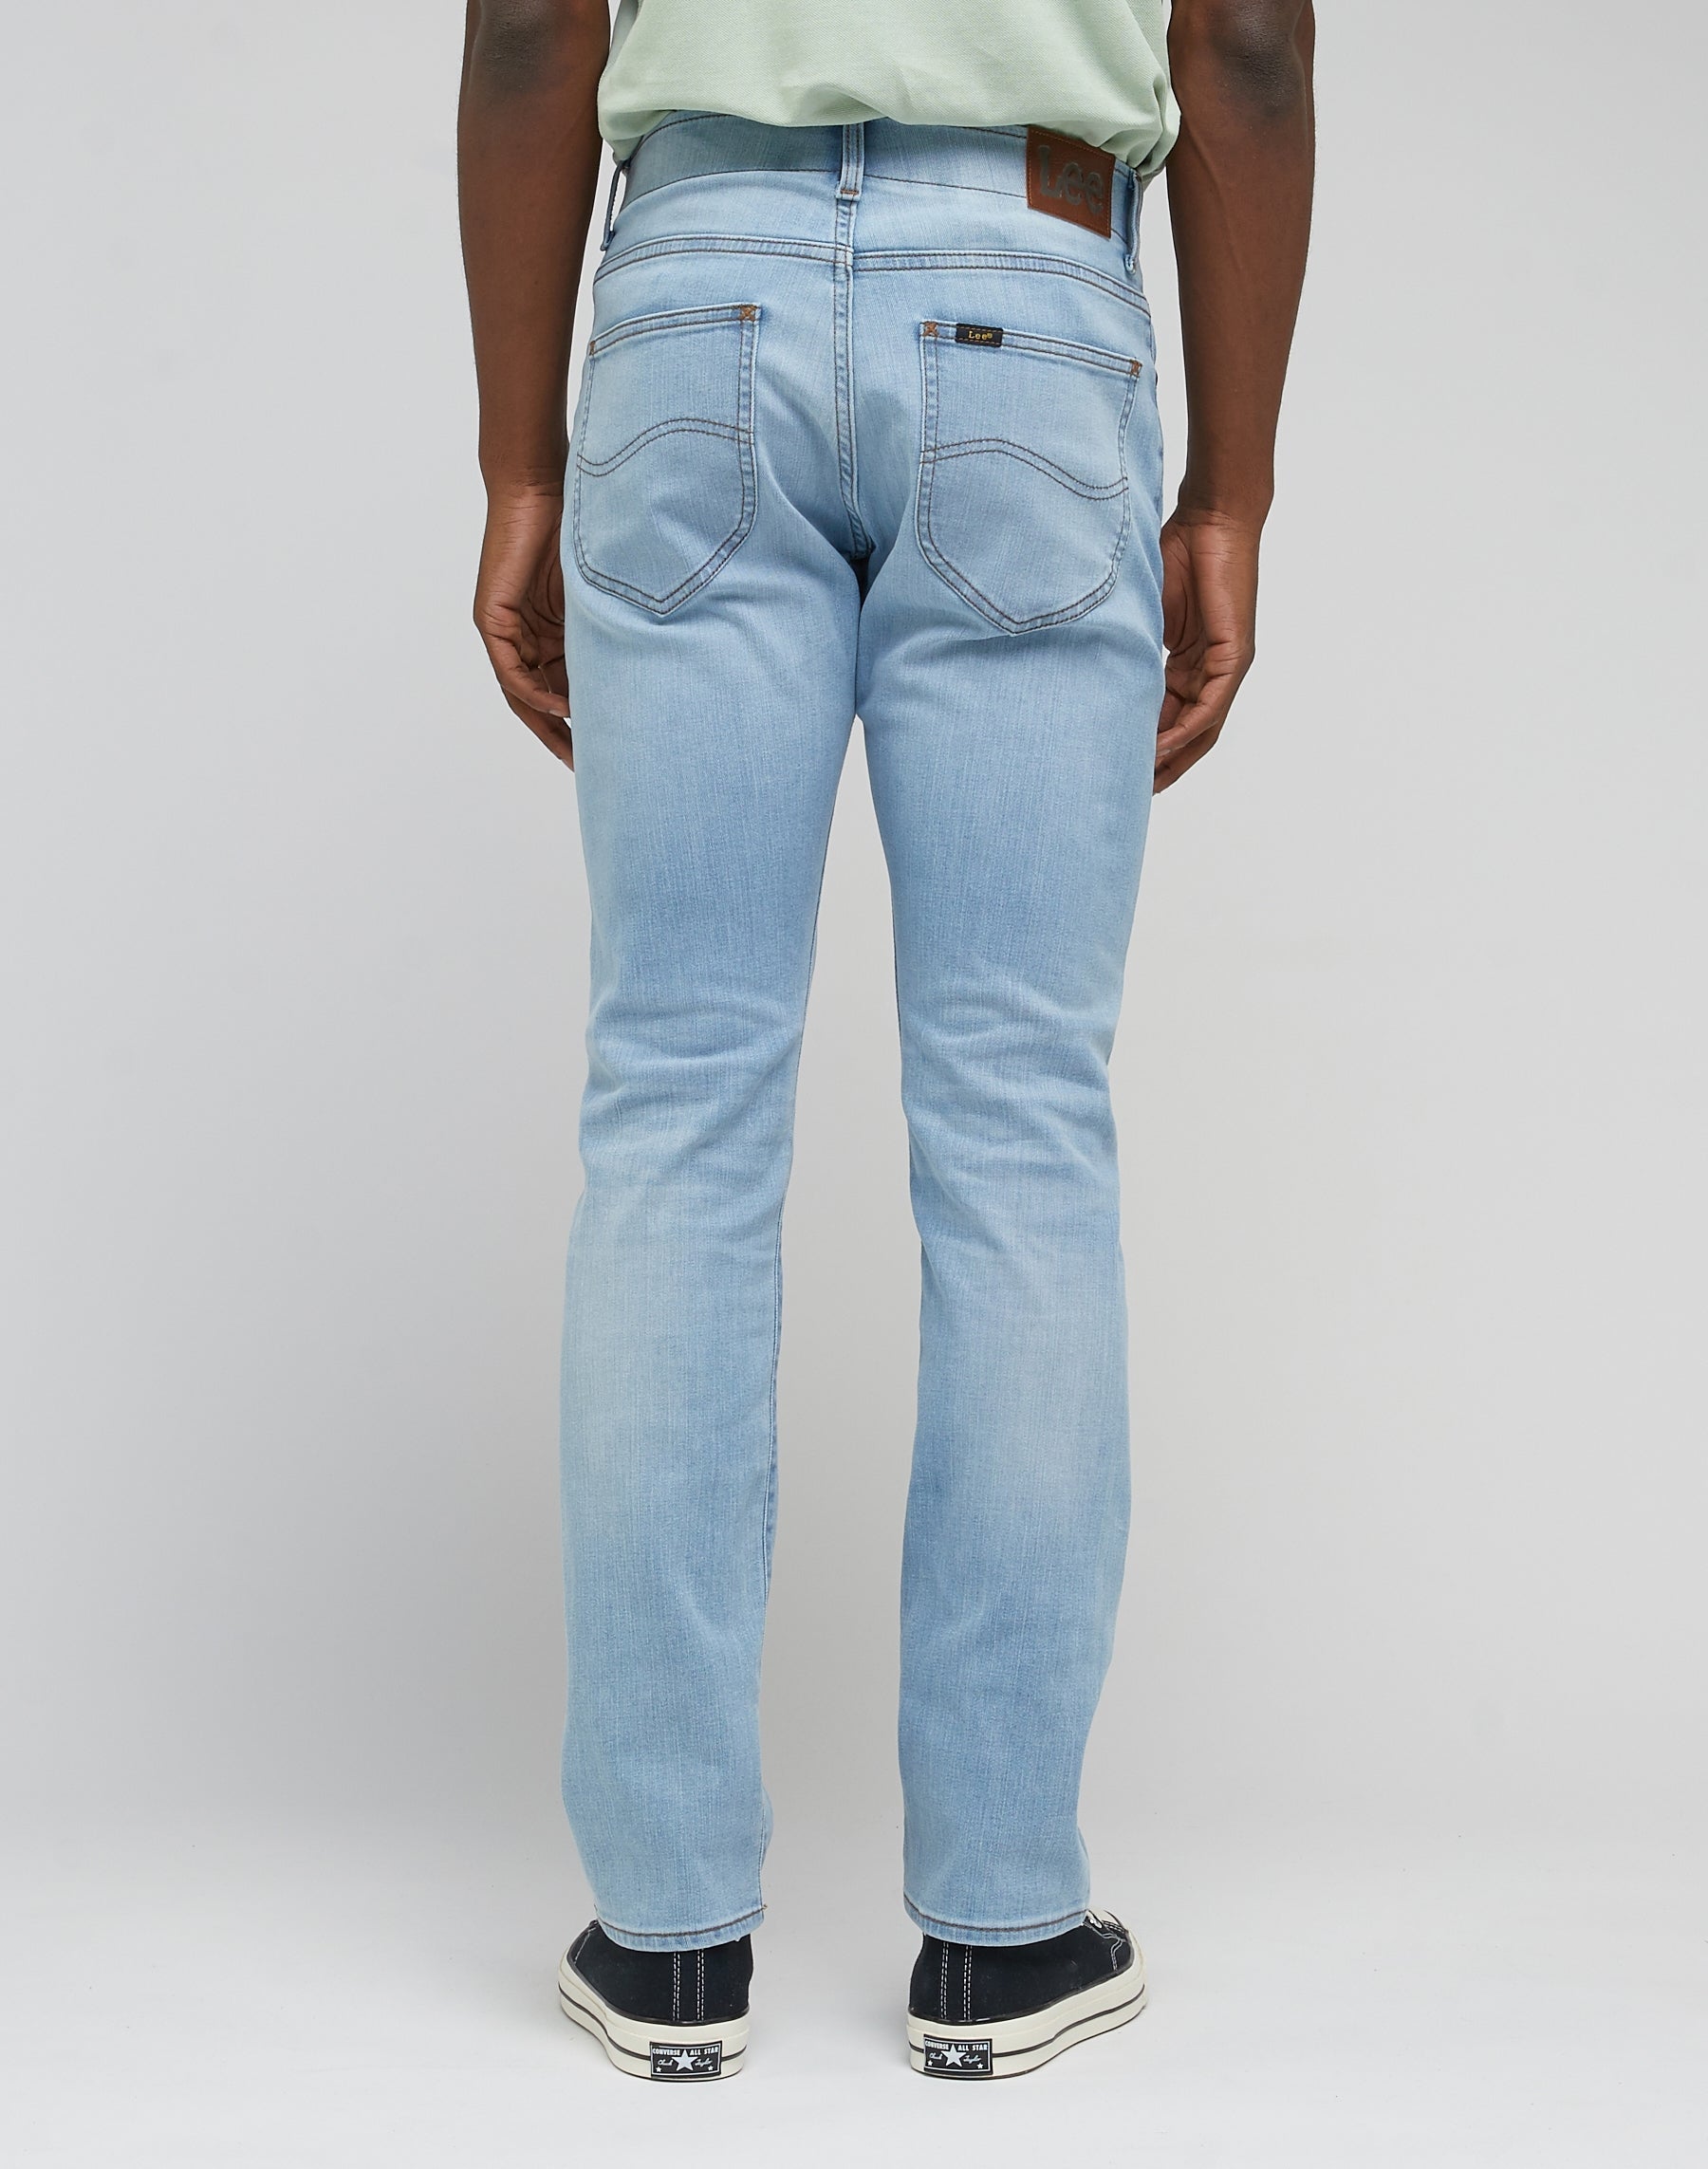 Slim Fit Mvp in Heron Blue Jeans Lee   